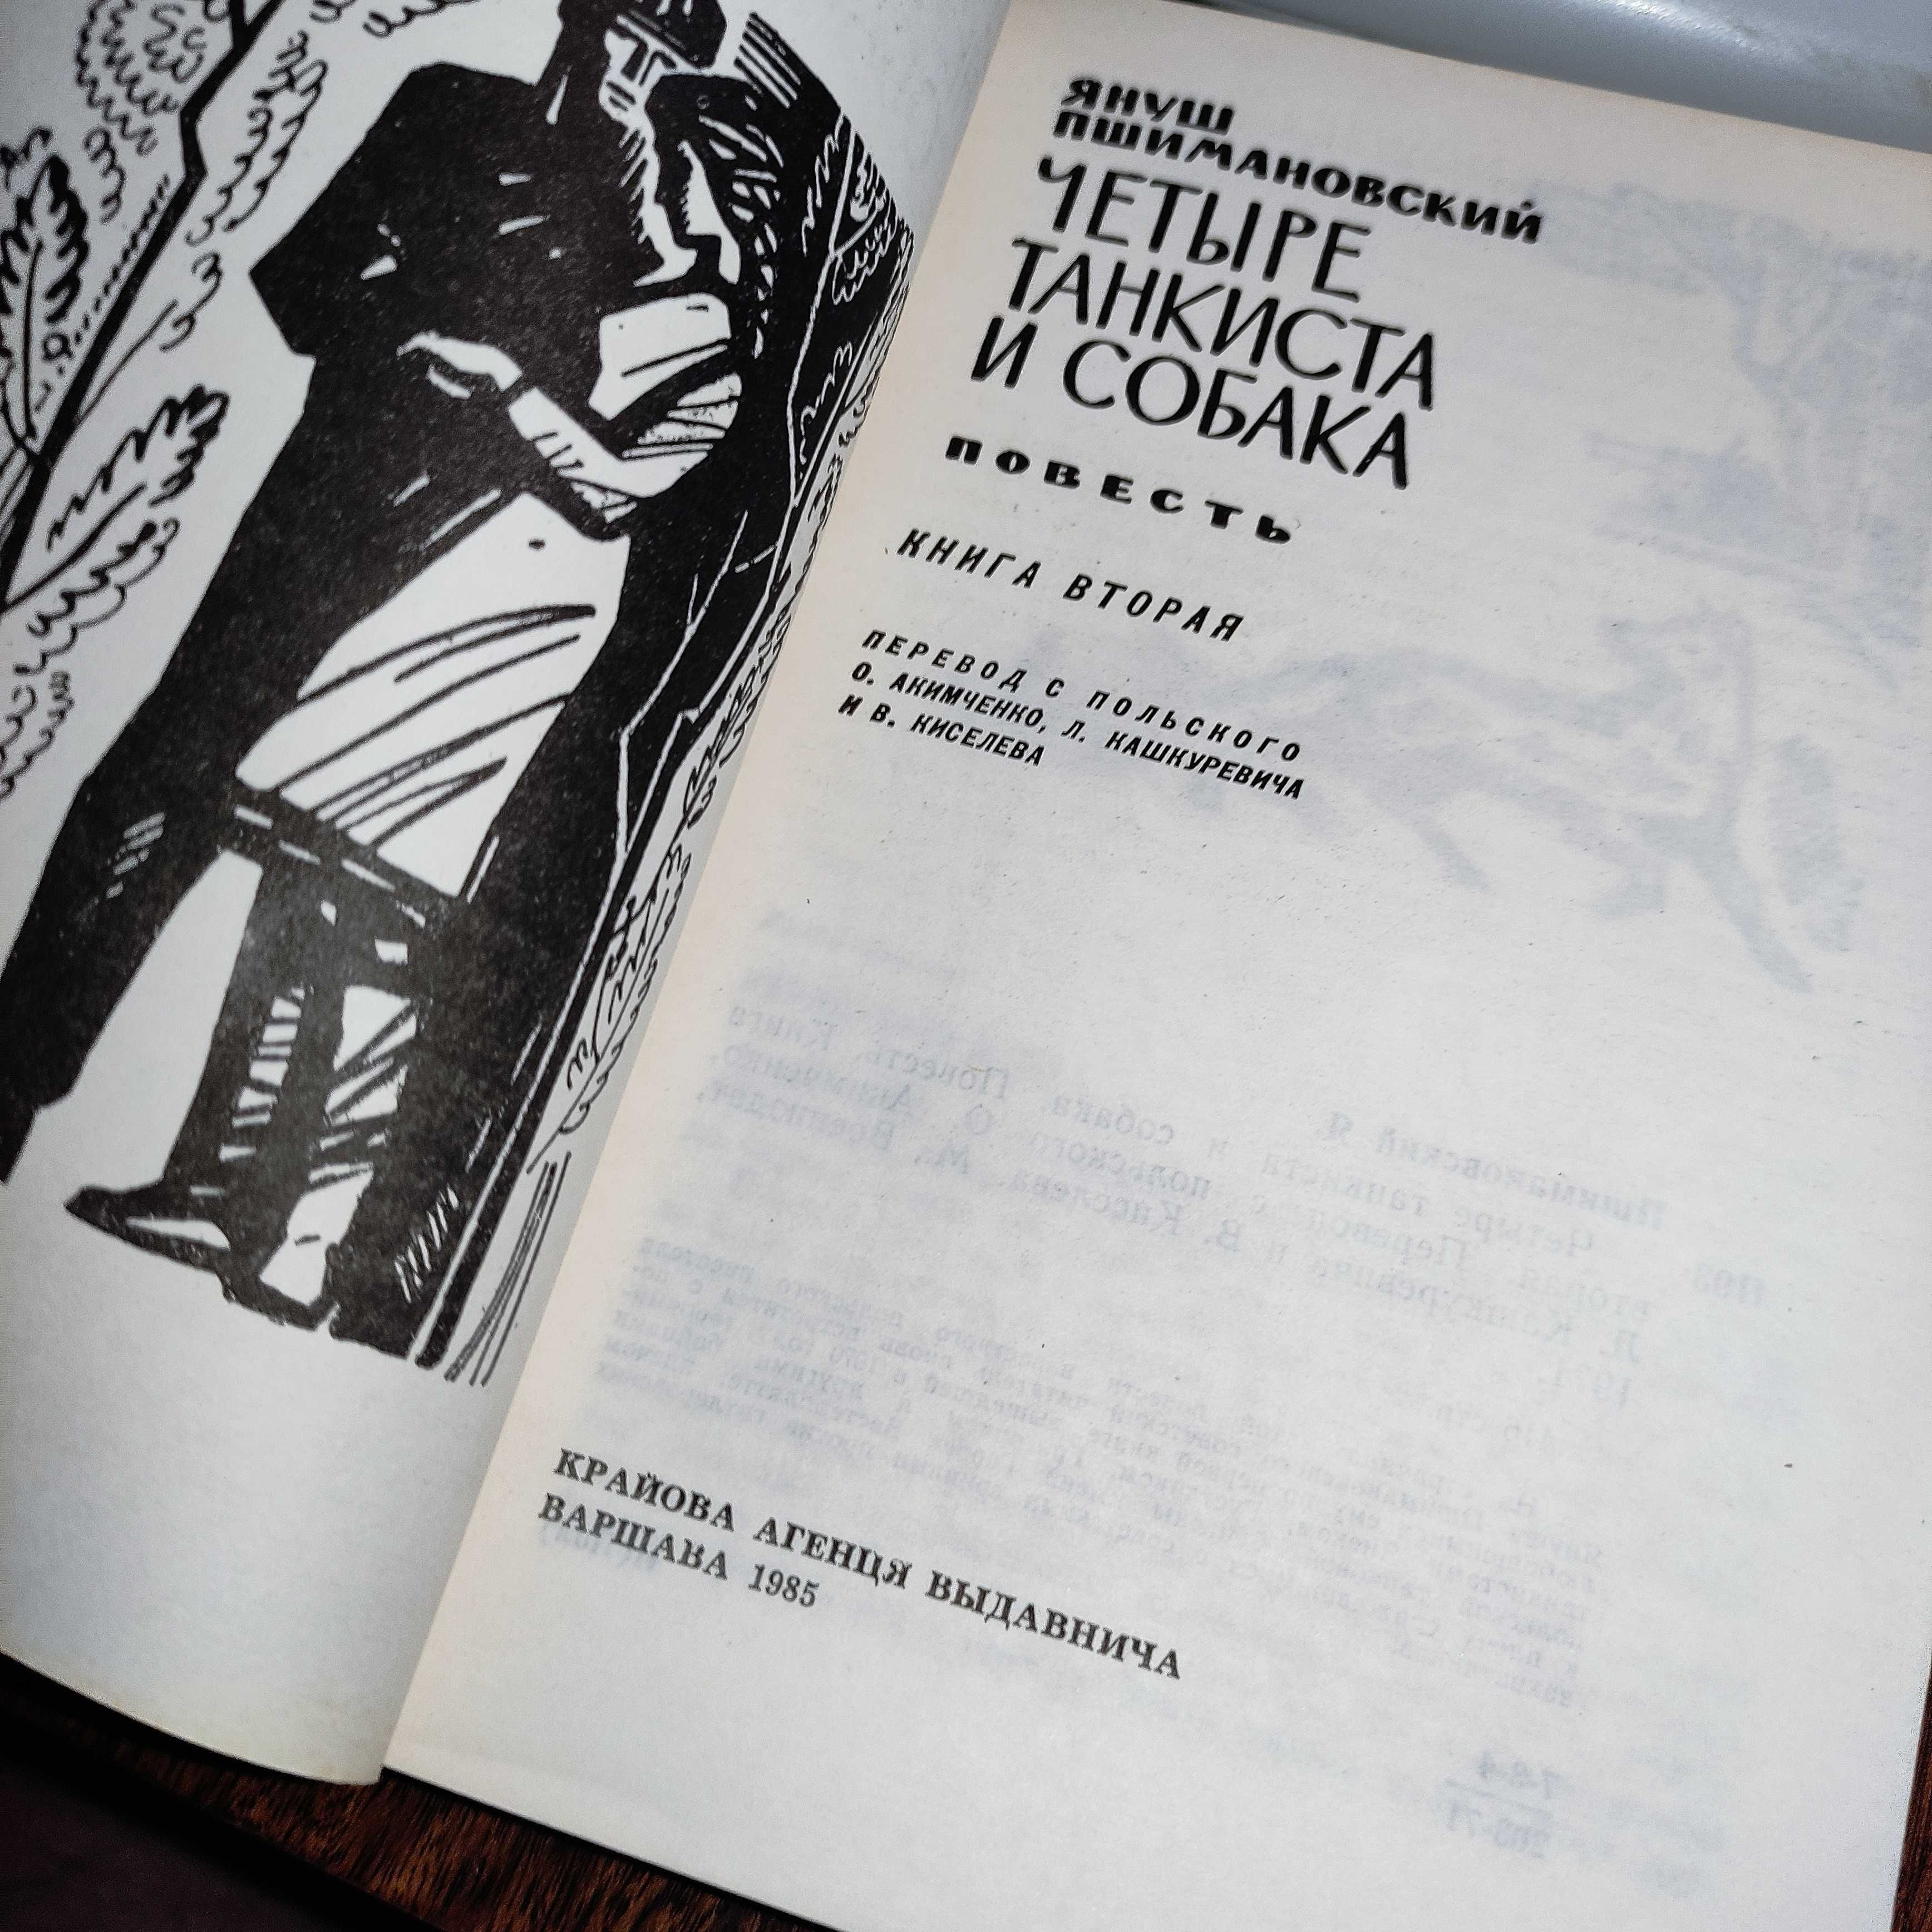 Януш Пшимановский "Четыре танкиста и собака" 1985, 1 и 2 том